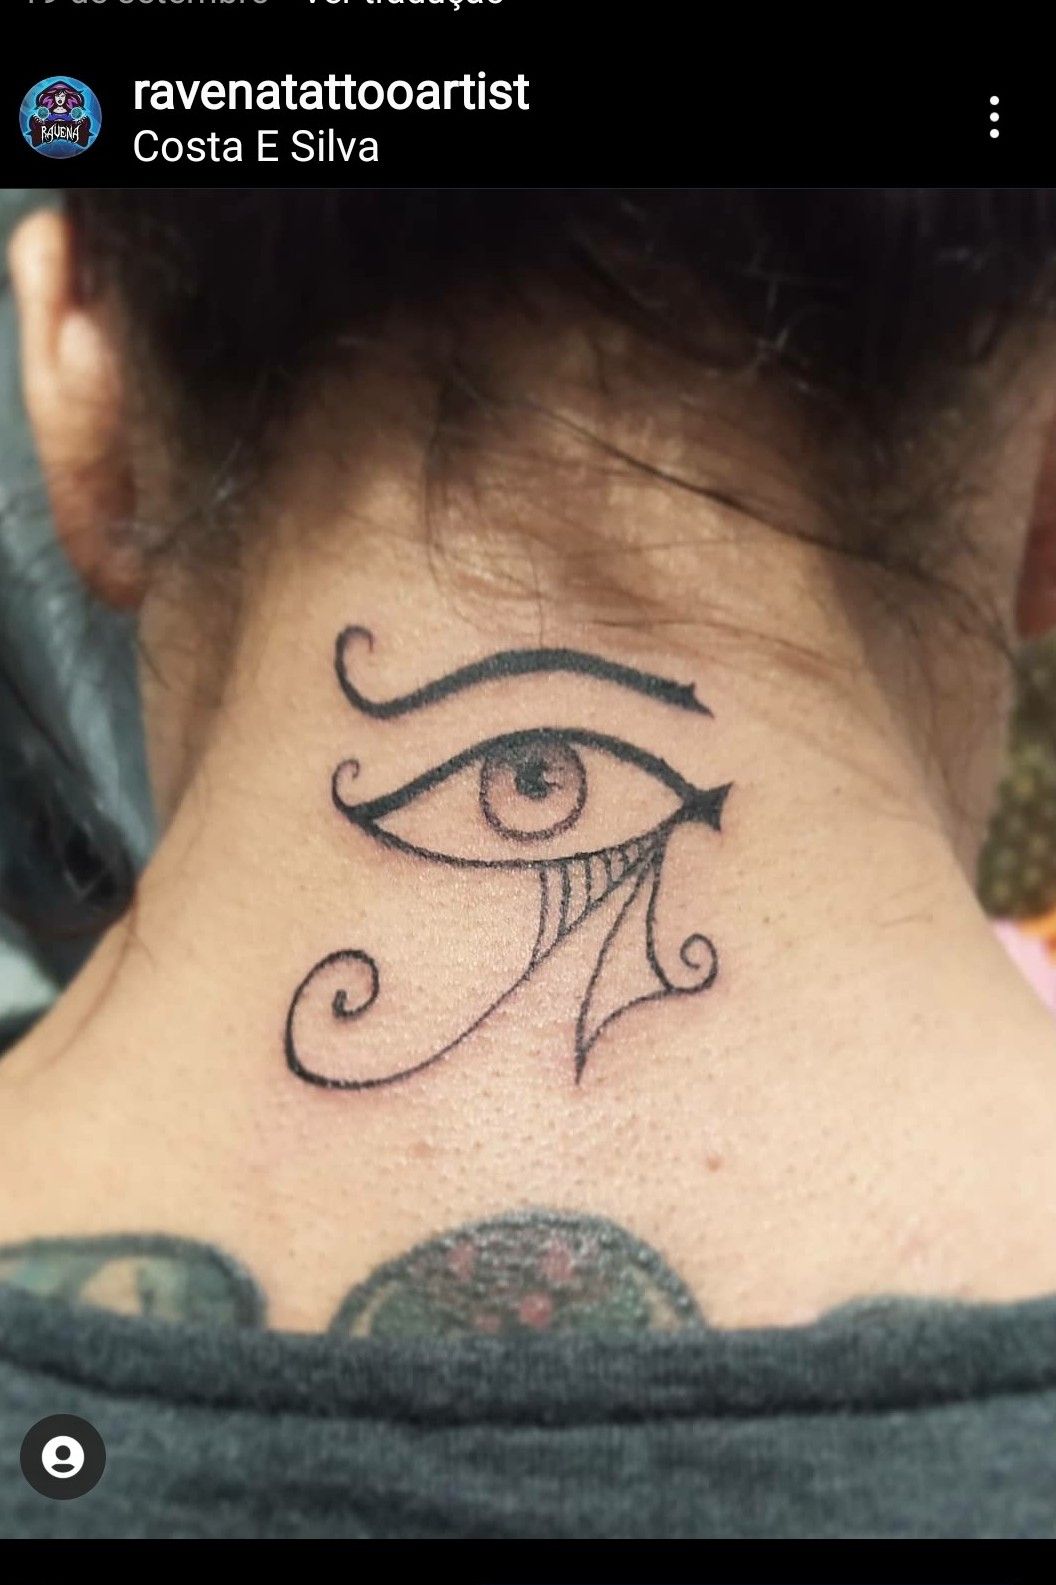 Tattoo uploaded by RAVENA Tɒƚƚoo Aɿƚiꙅƚ • Feita por mim • Tattoodo